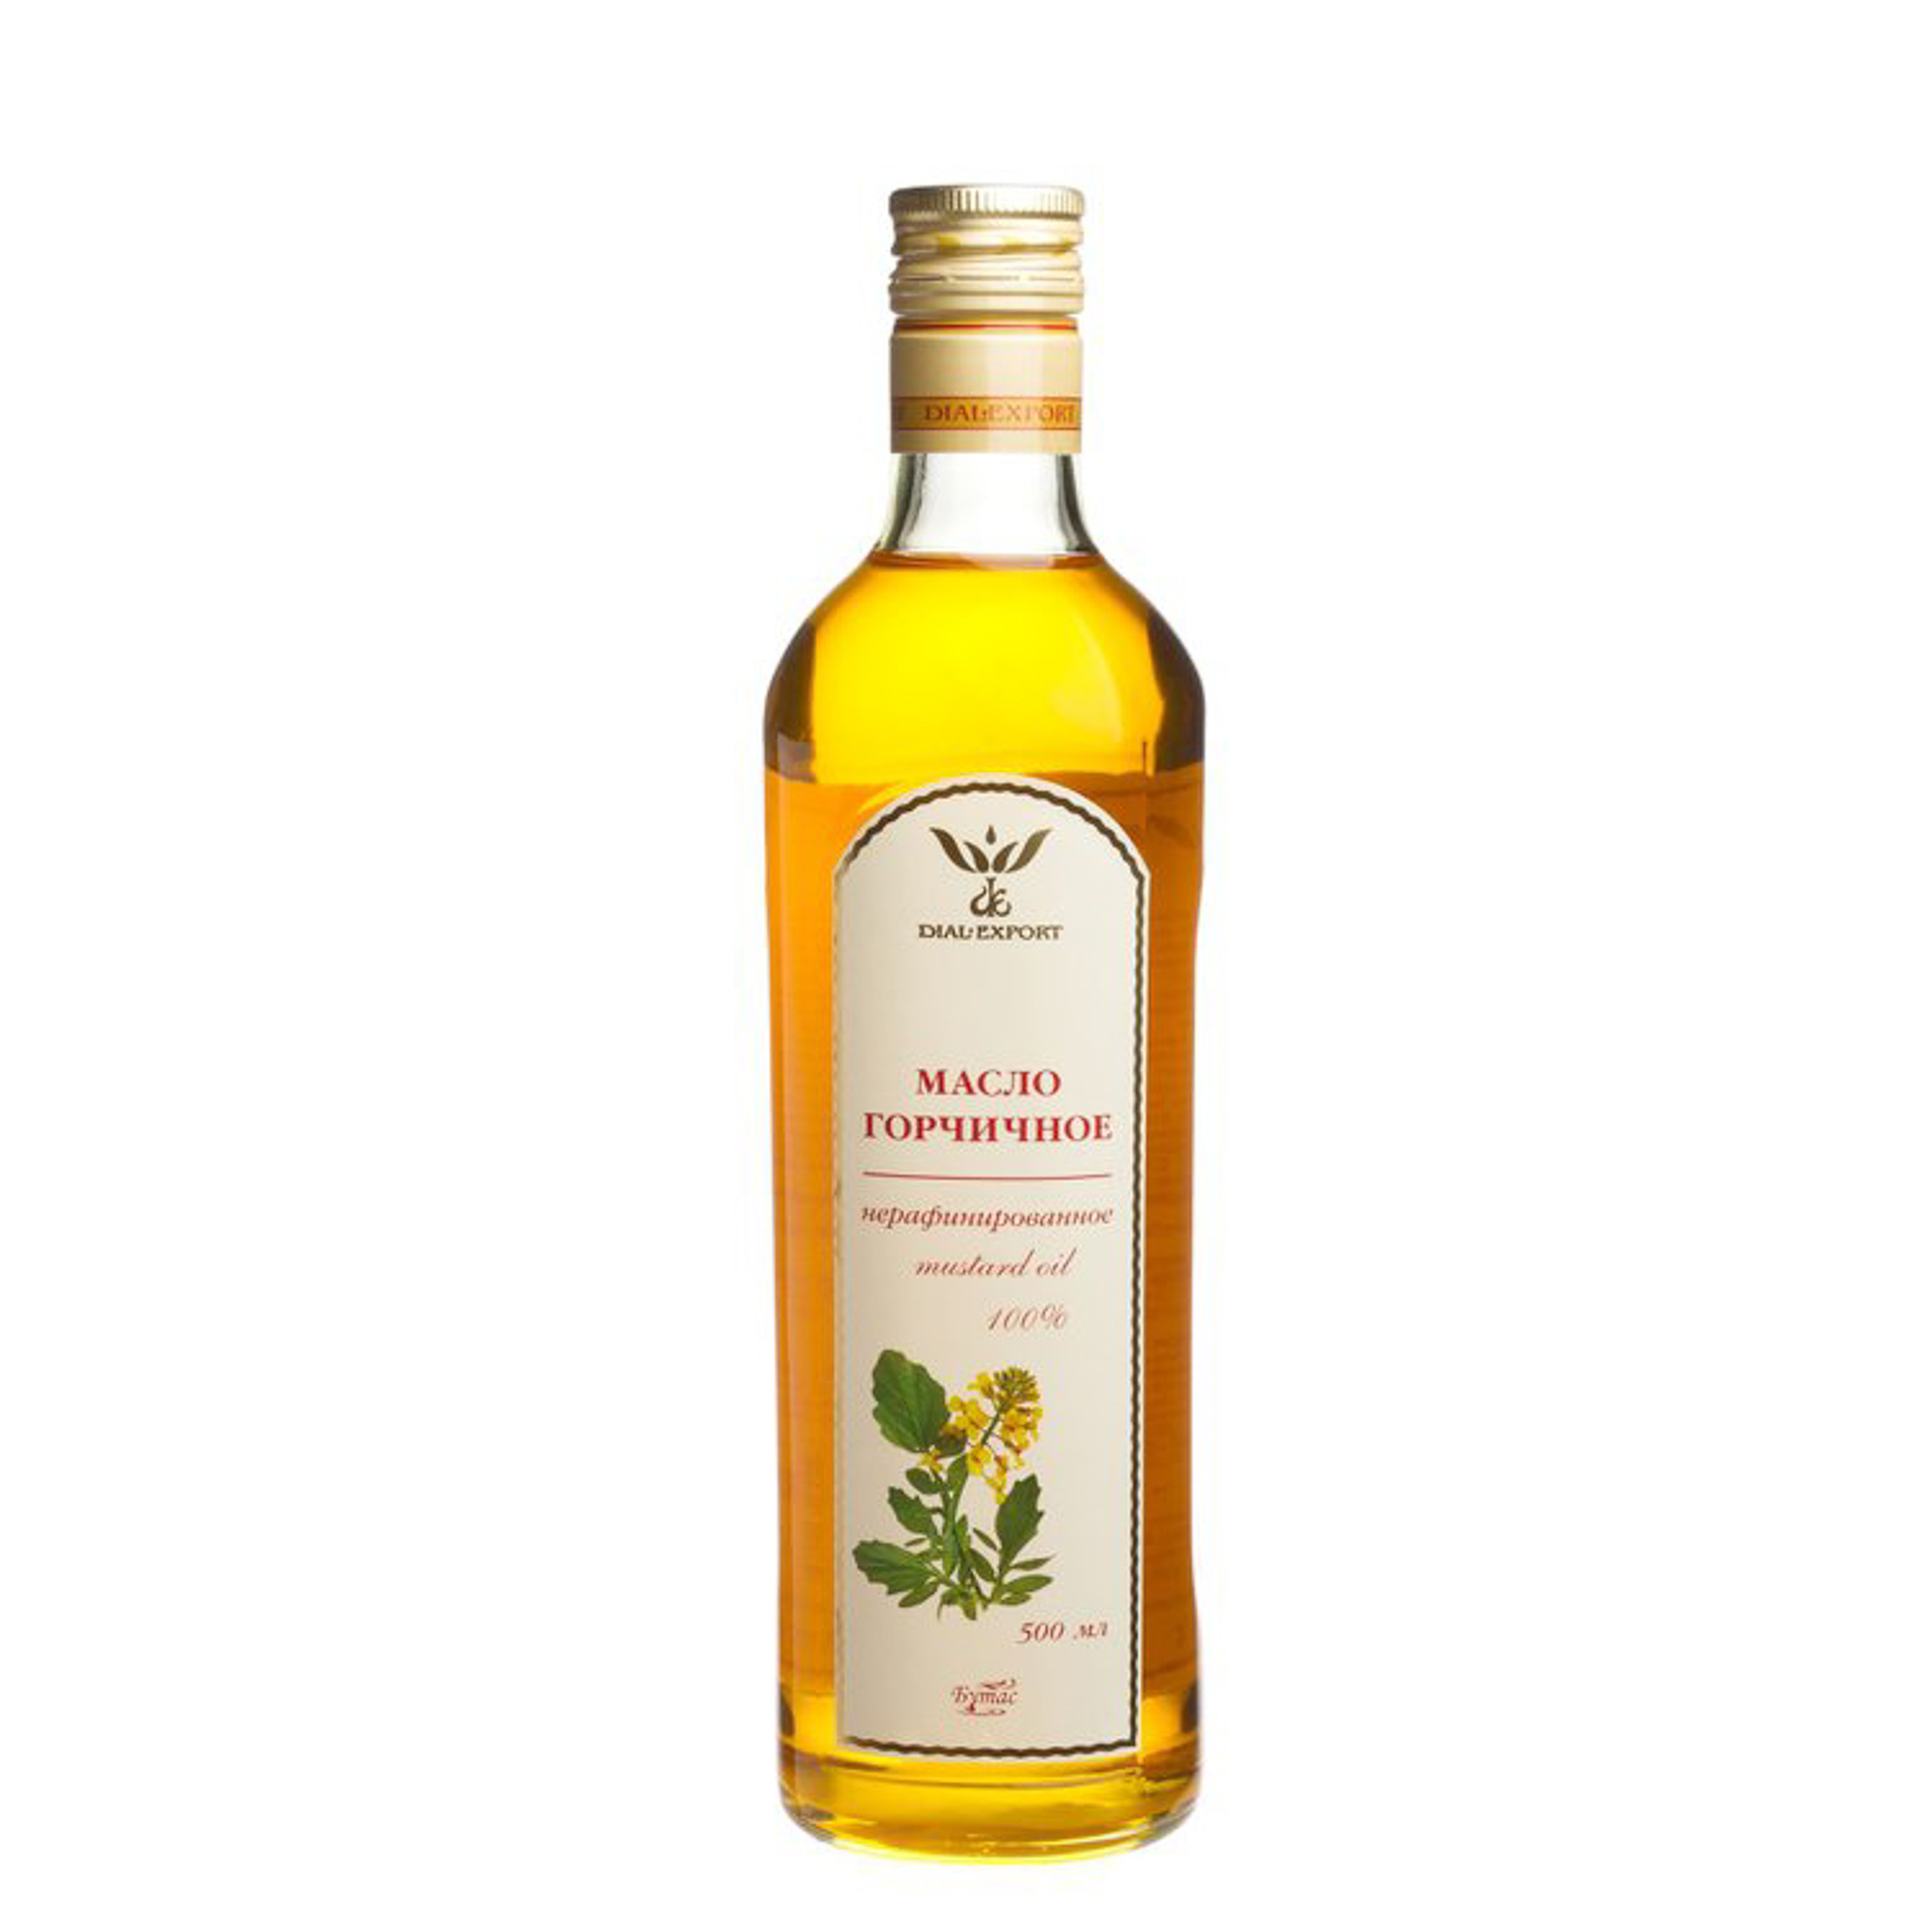 Горчичное масло DIAL-EXPORT 500 мл масло оливковое la espanola extra virgin нерафинированное 1 литр